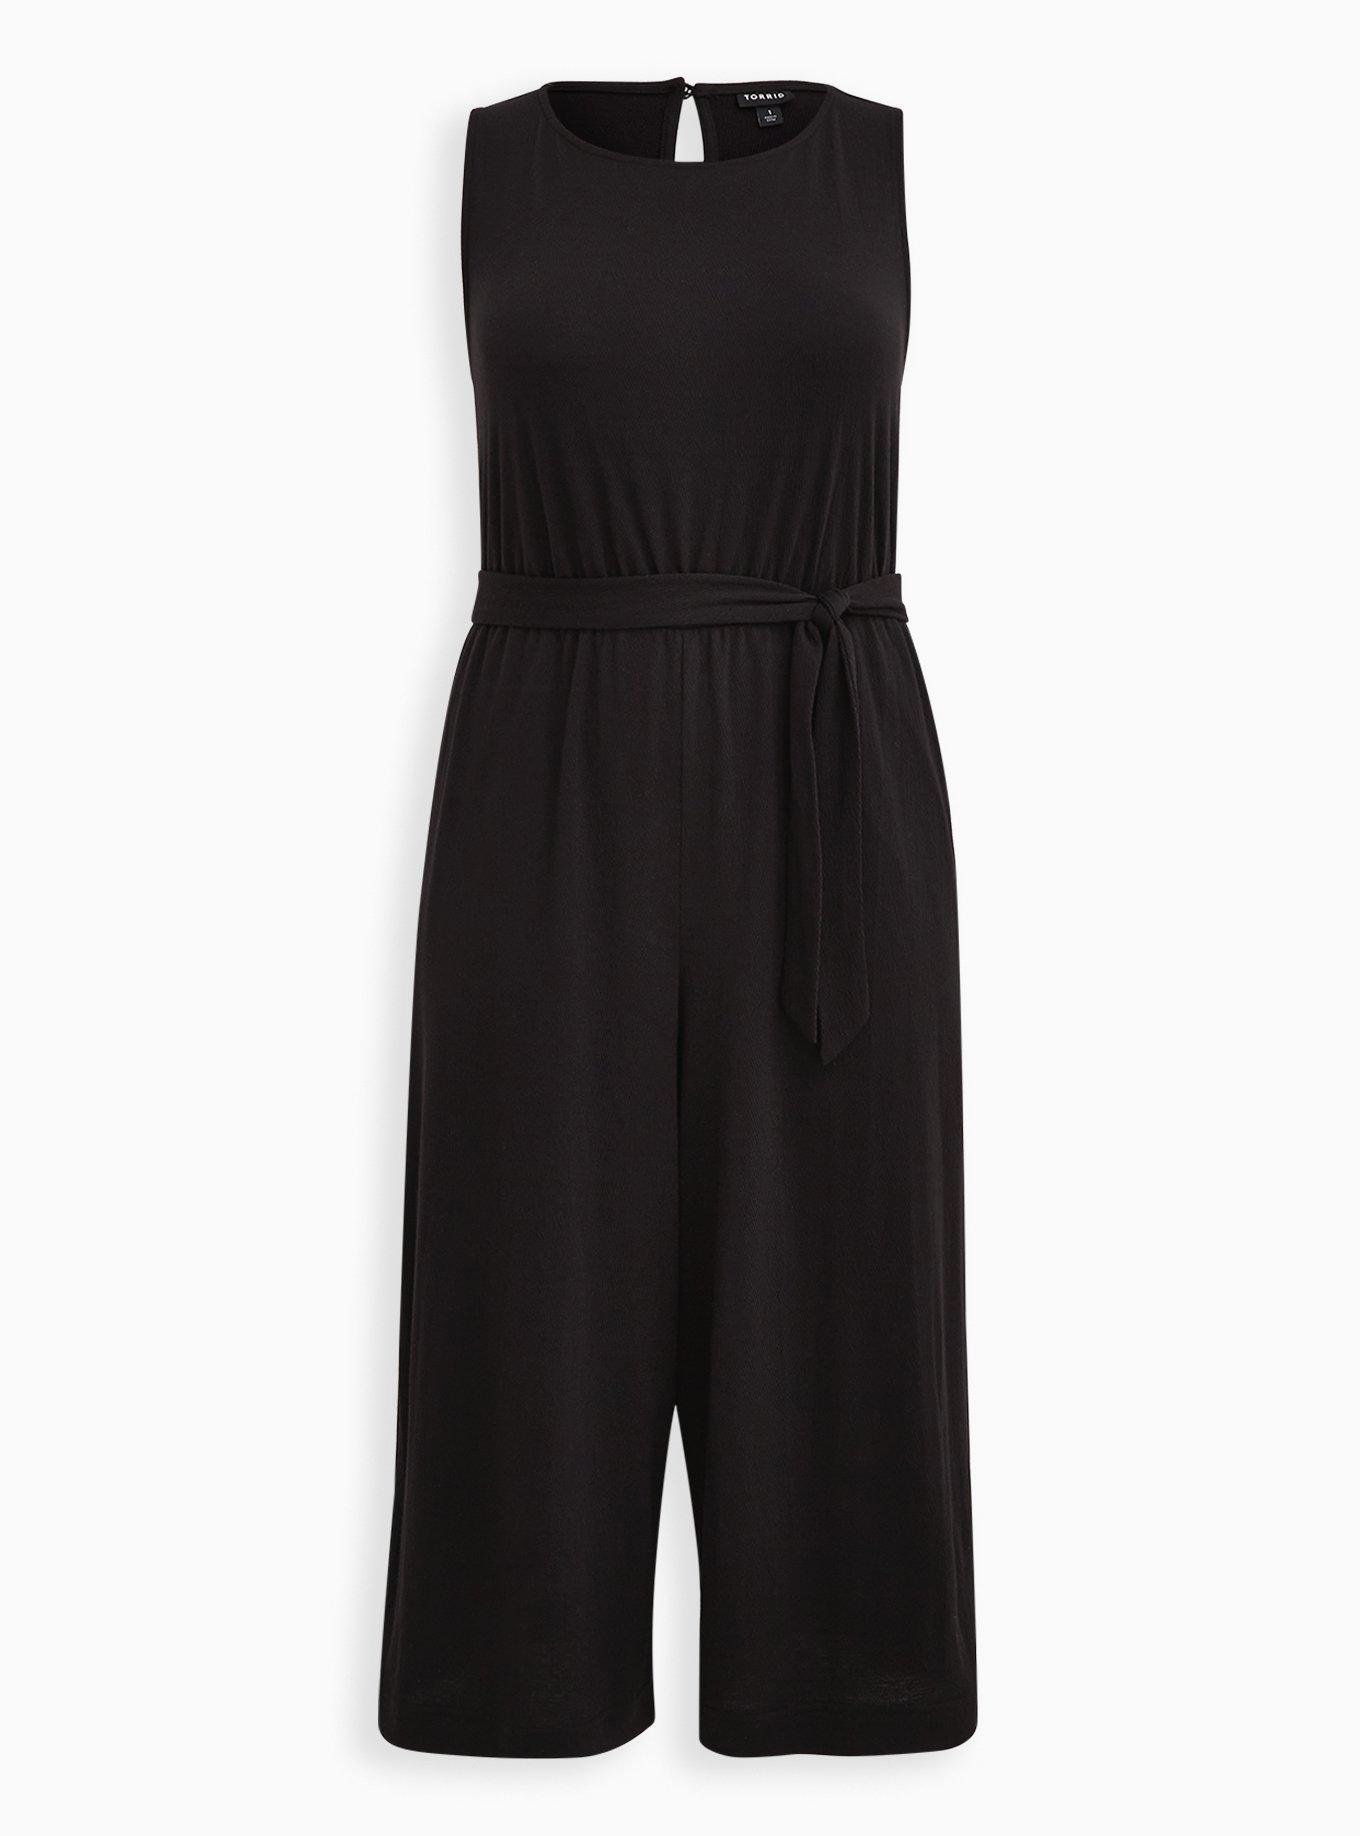 Plus Size - Black Textured Knit Culotte Jumpsuit - Torrid